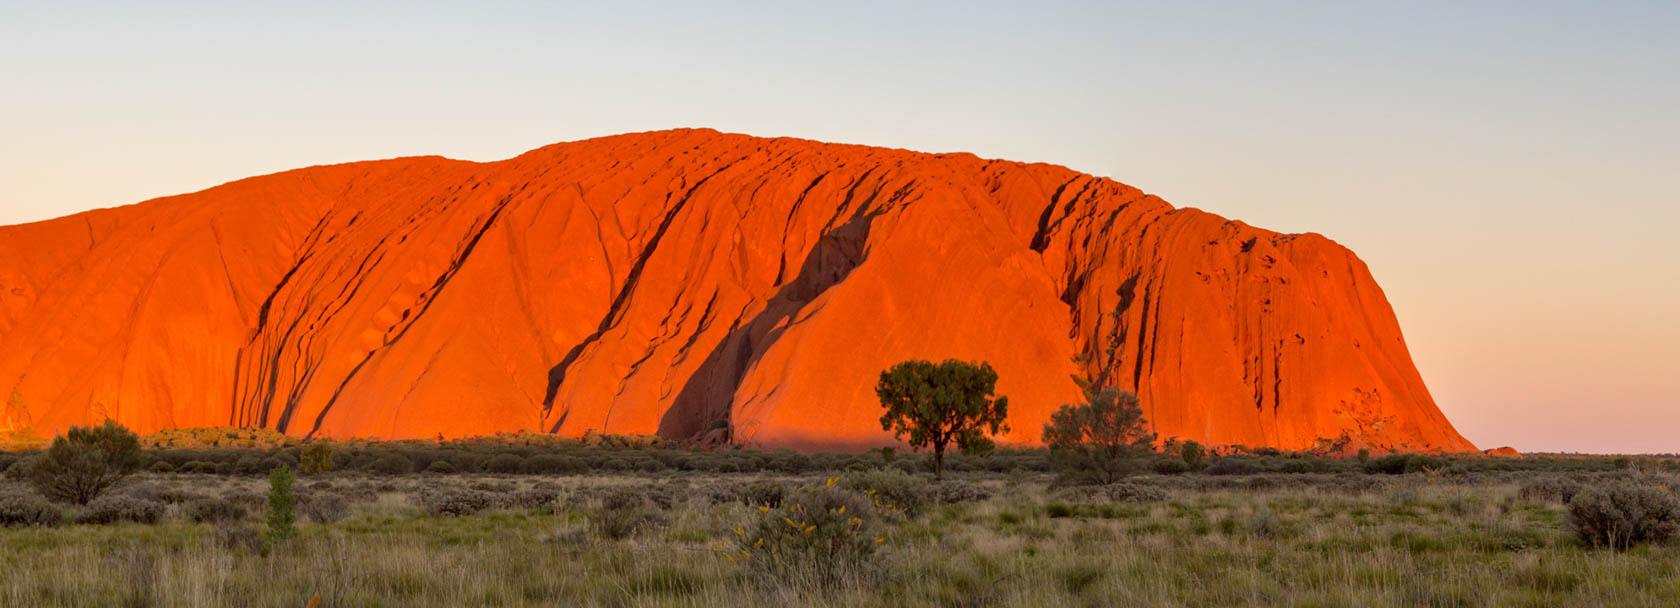 Australian red rock formation.